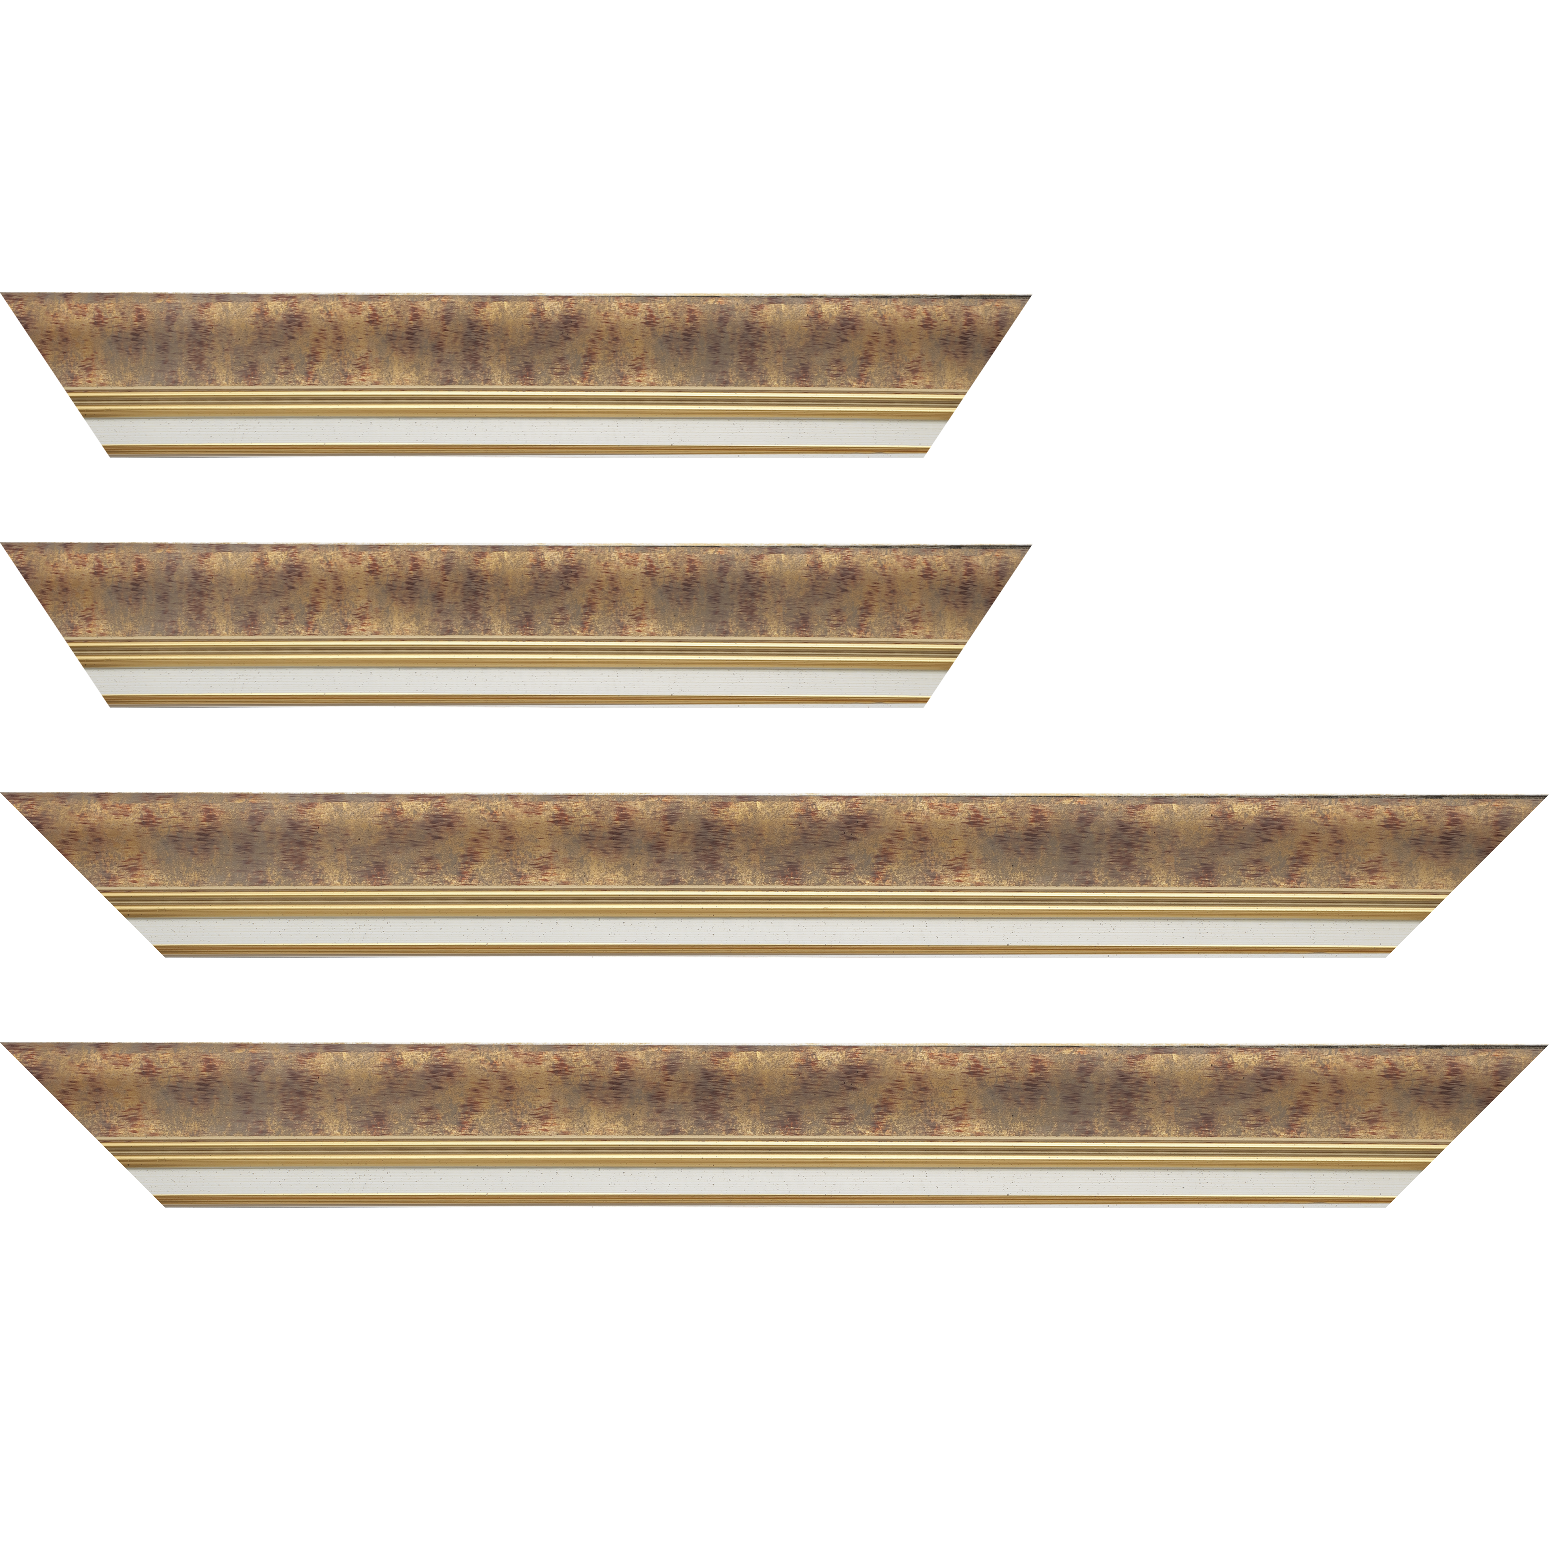 Baguette bois profil incurvé largeur 5.7cm de couleur bordeaux patiné fond or marie louise blanche mouchetée filet or intégré - 70x100